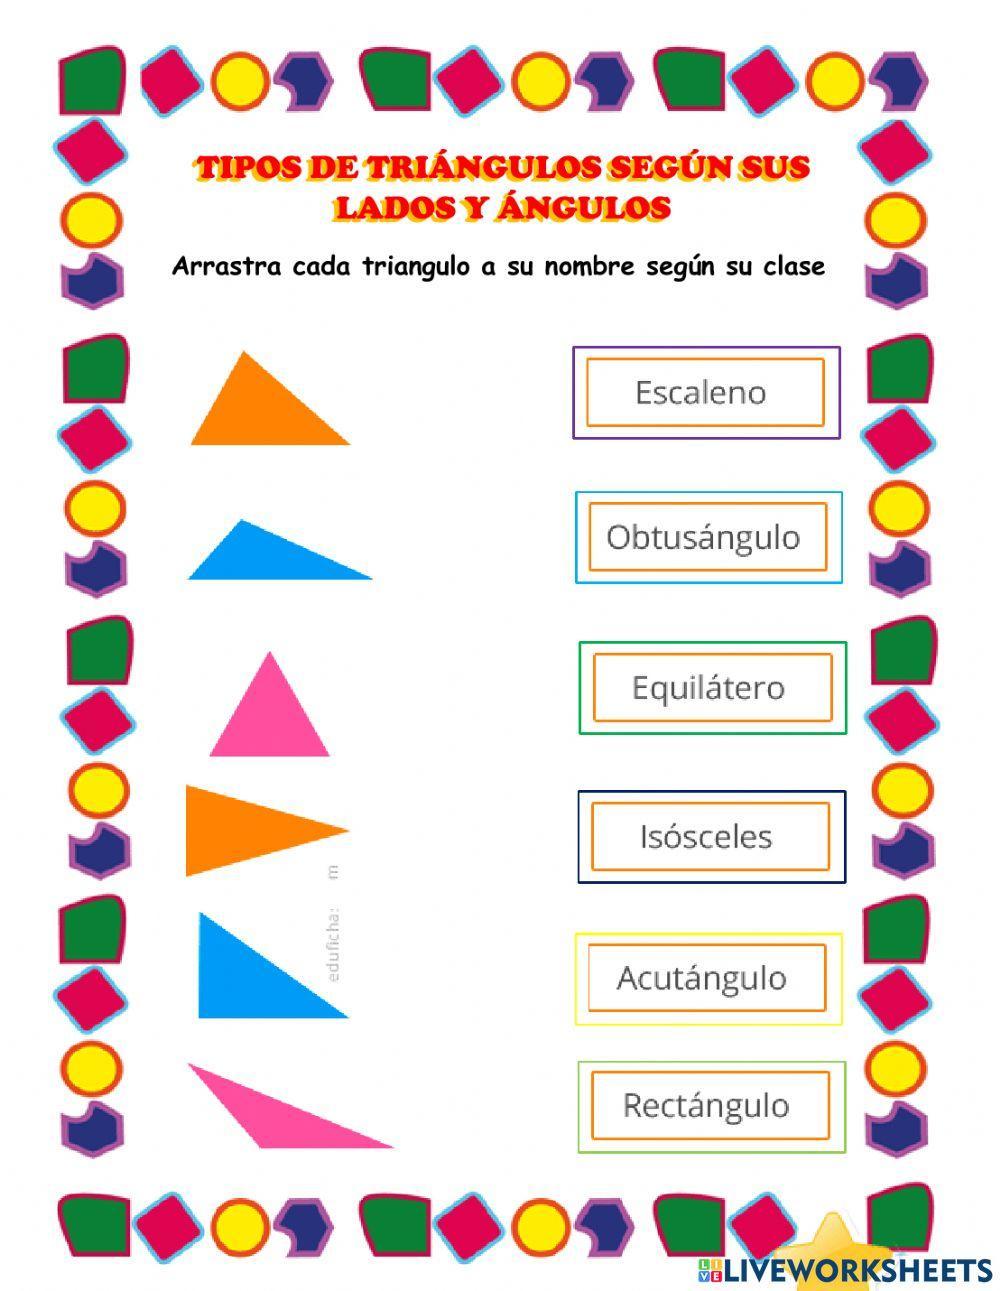 Clases de triangulos según sus lados y ángulos